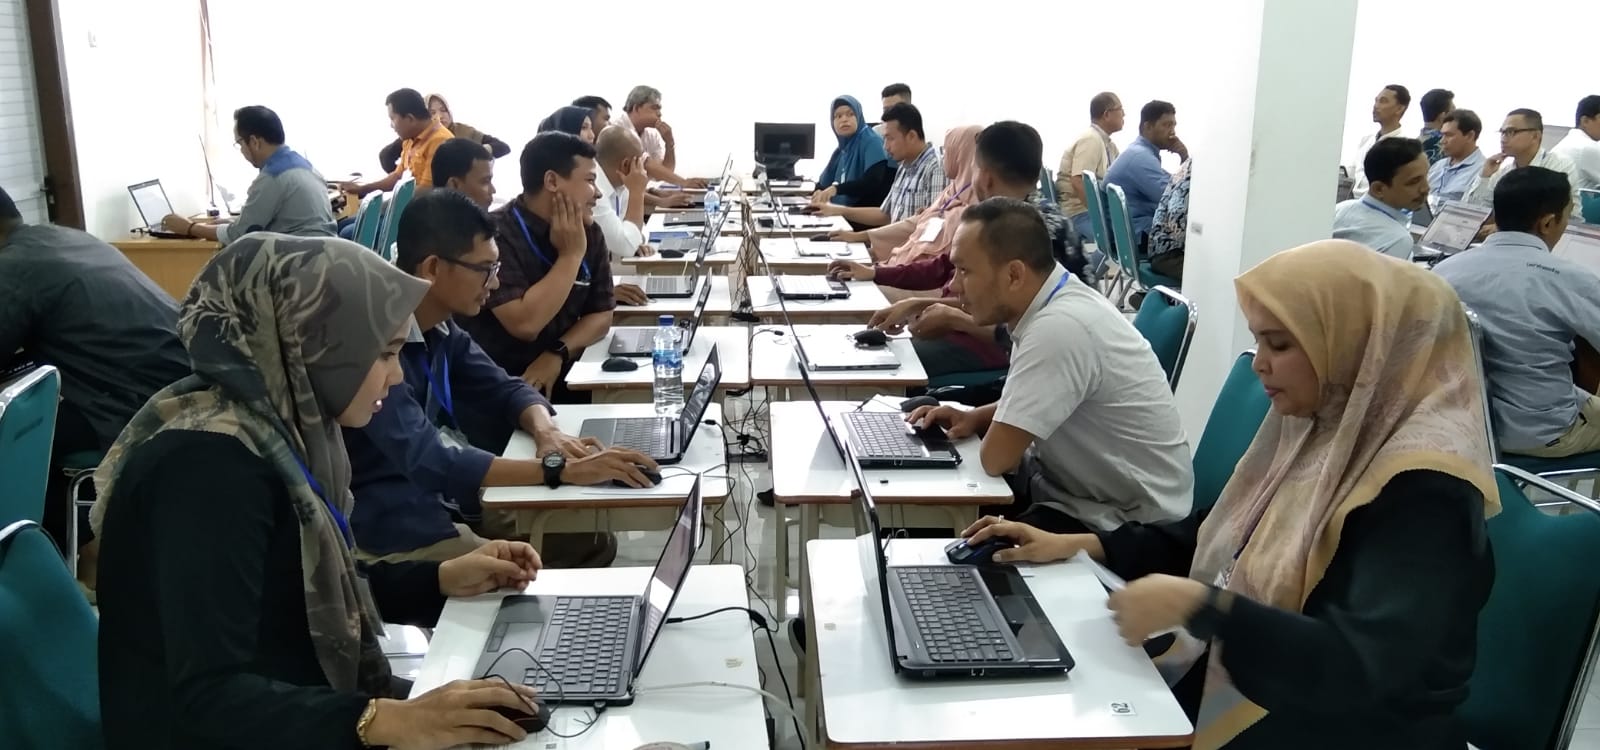 77 Peserta Mengikuti Ujian CAT Seleksi KIP Banda Aceh